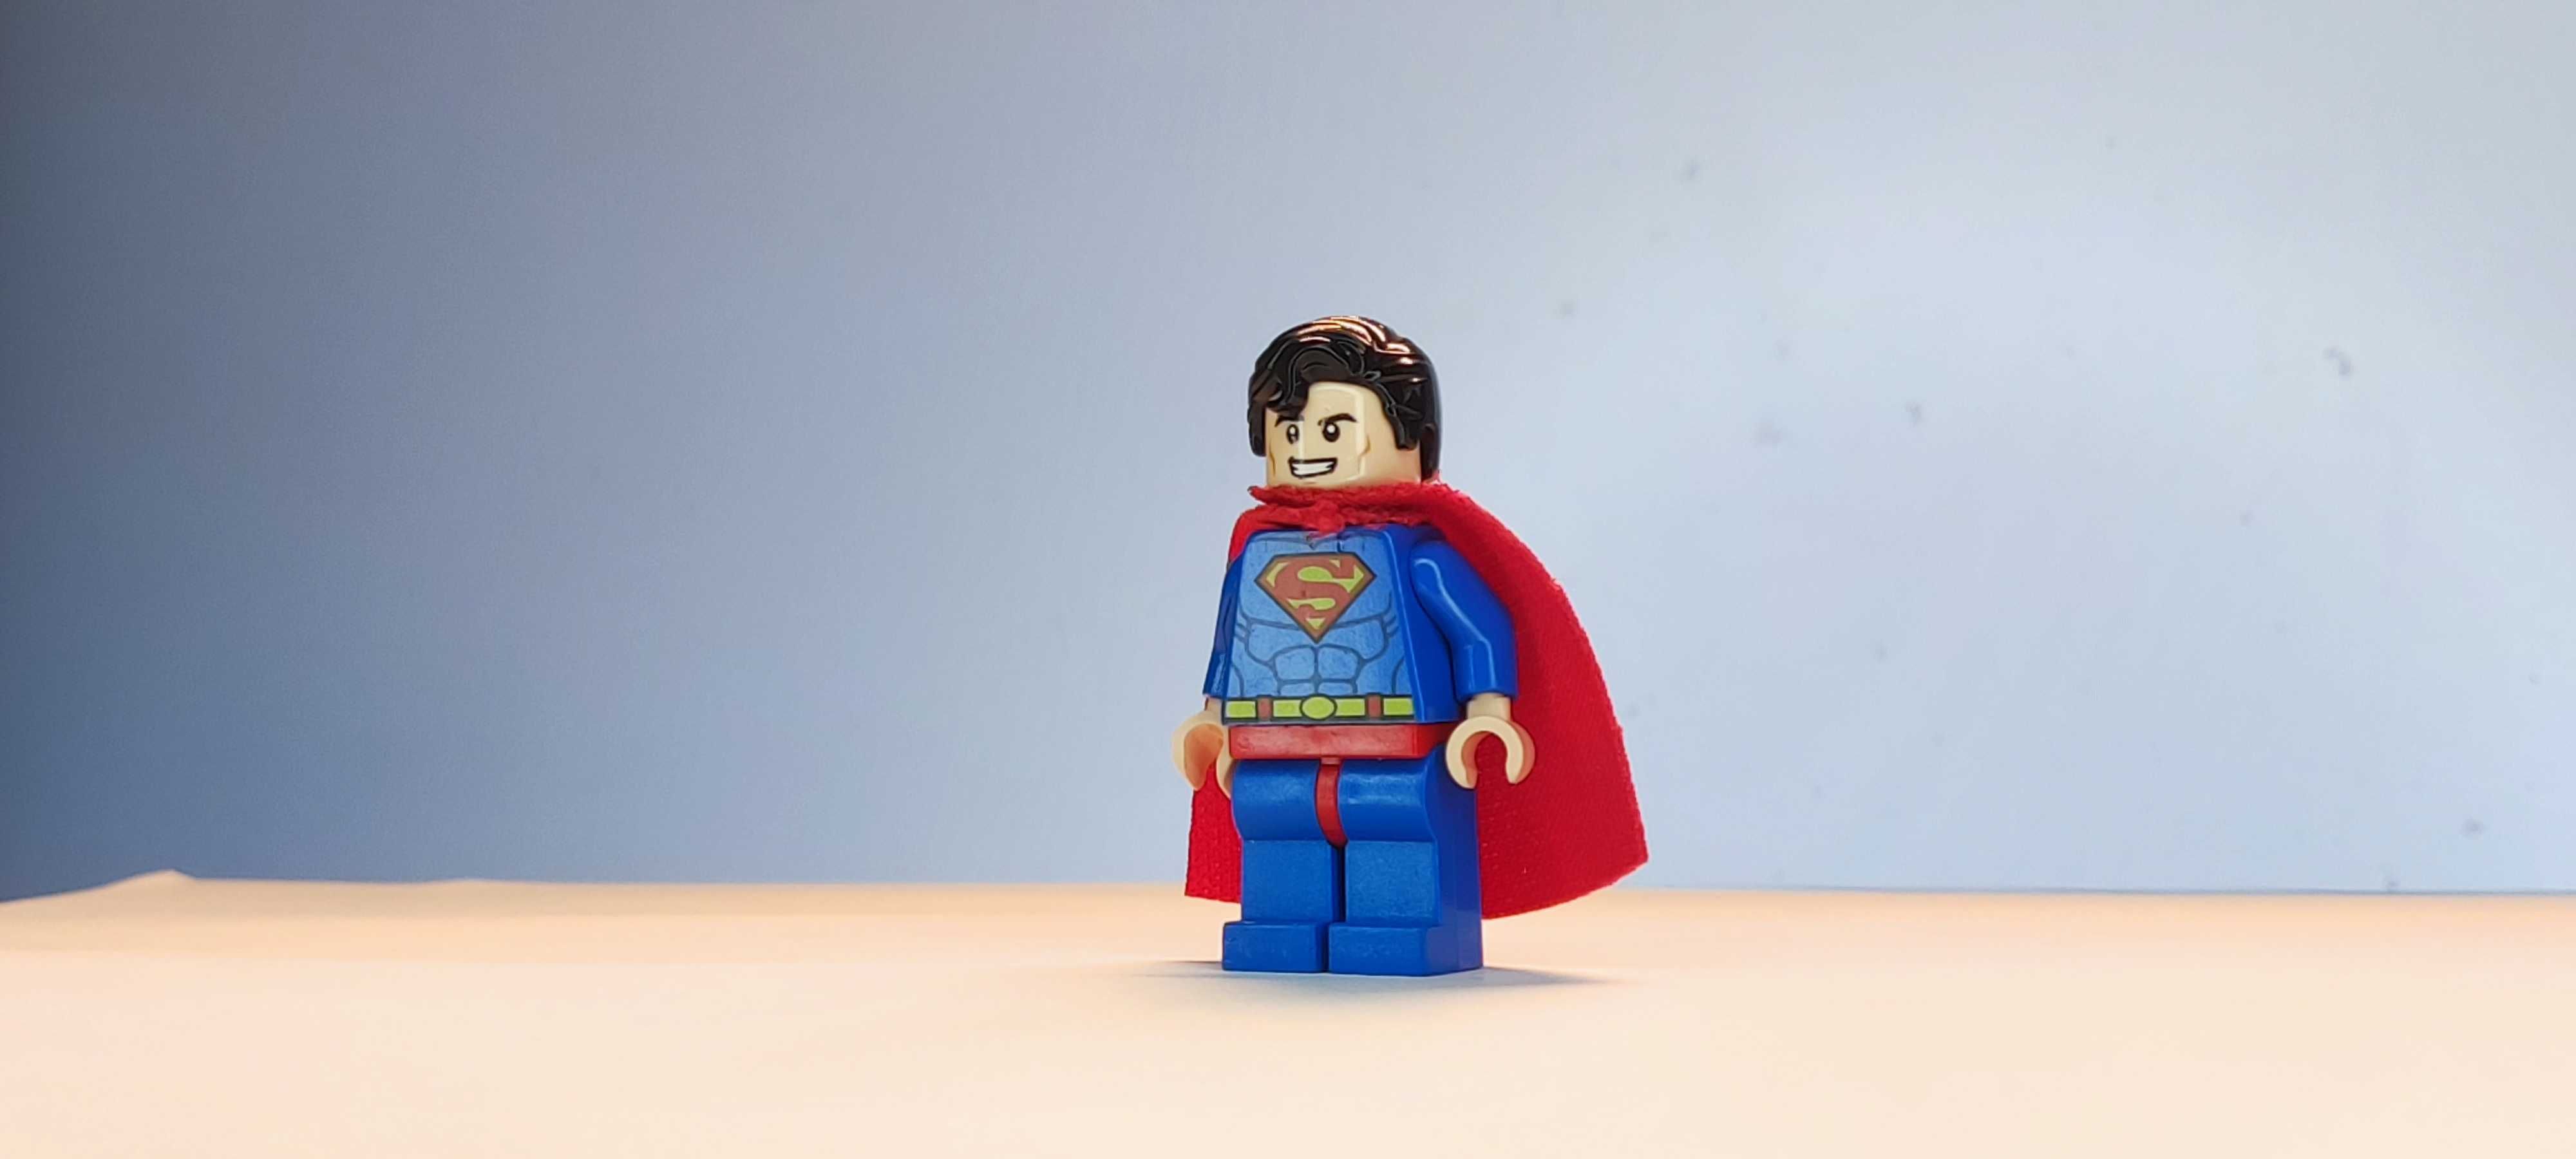 Minifigura Lego - Superman